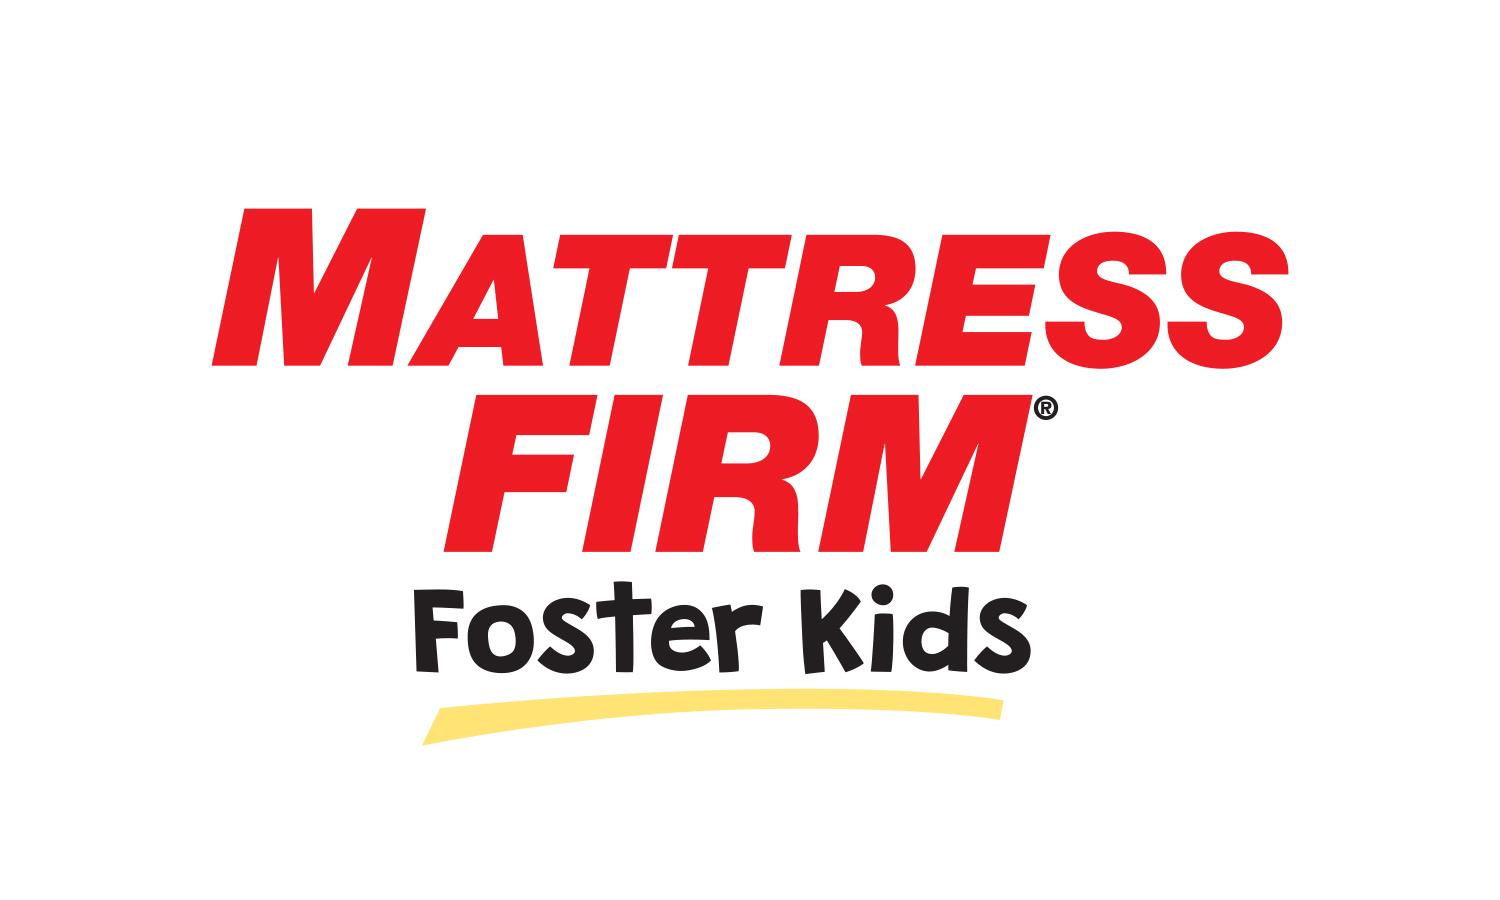 mattress firm foster kids